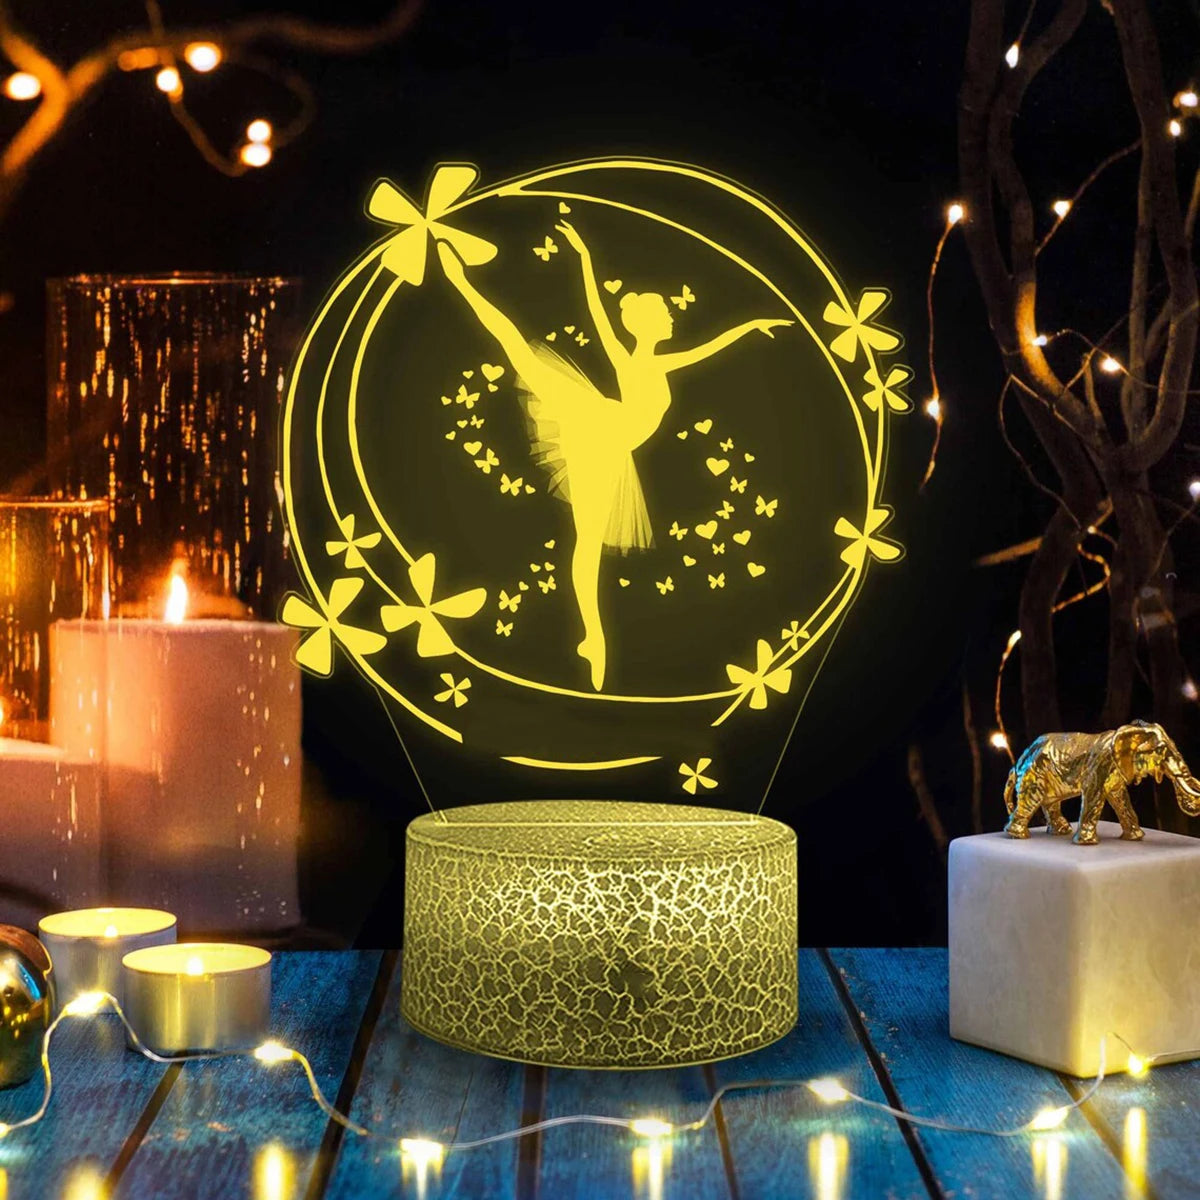 Night Light 3D LED Lamp For Children's Room Ballet Dancer 7 / 16 Colored  Decor Christmas Birthday Gift